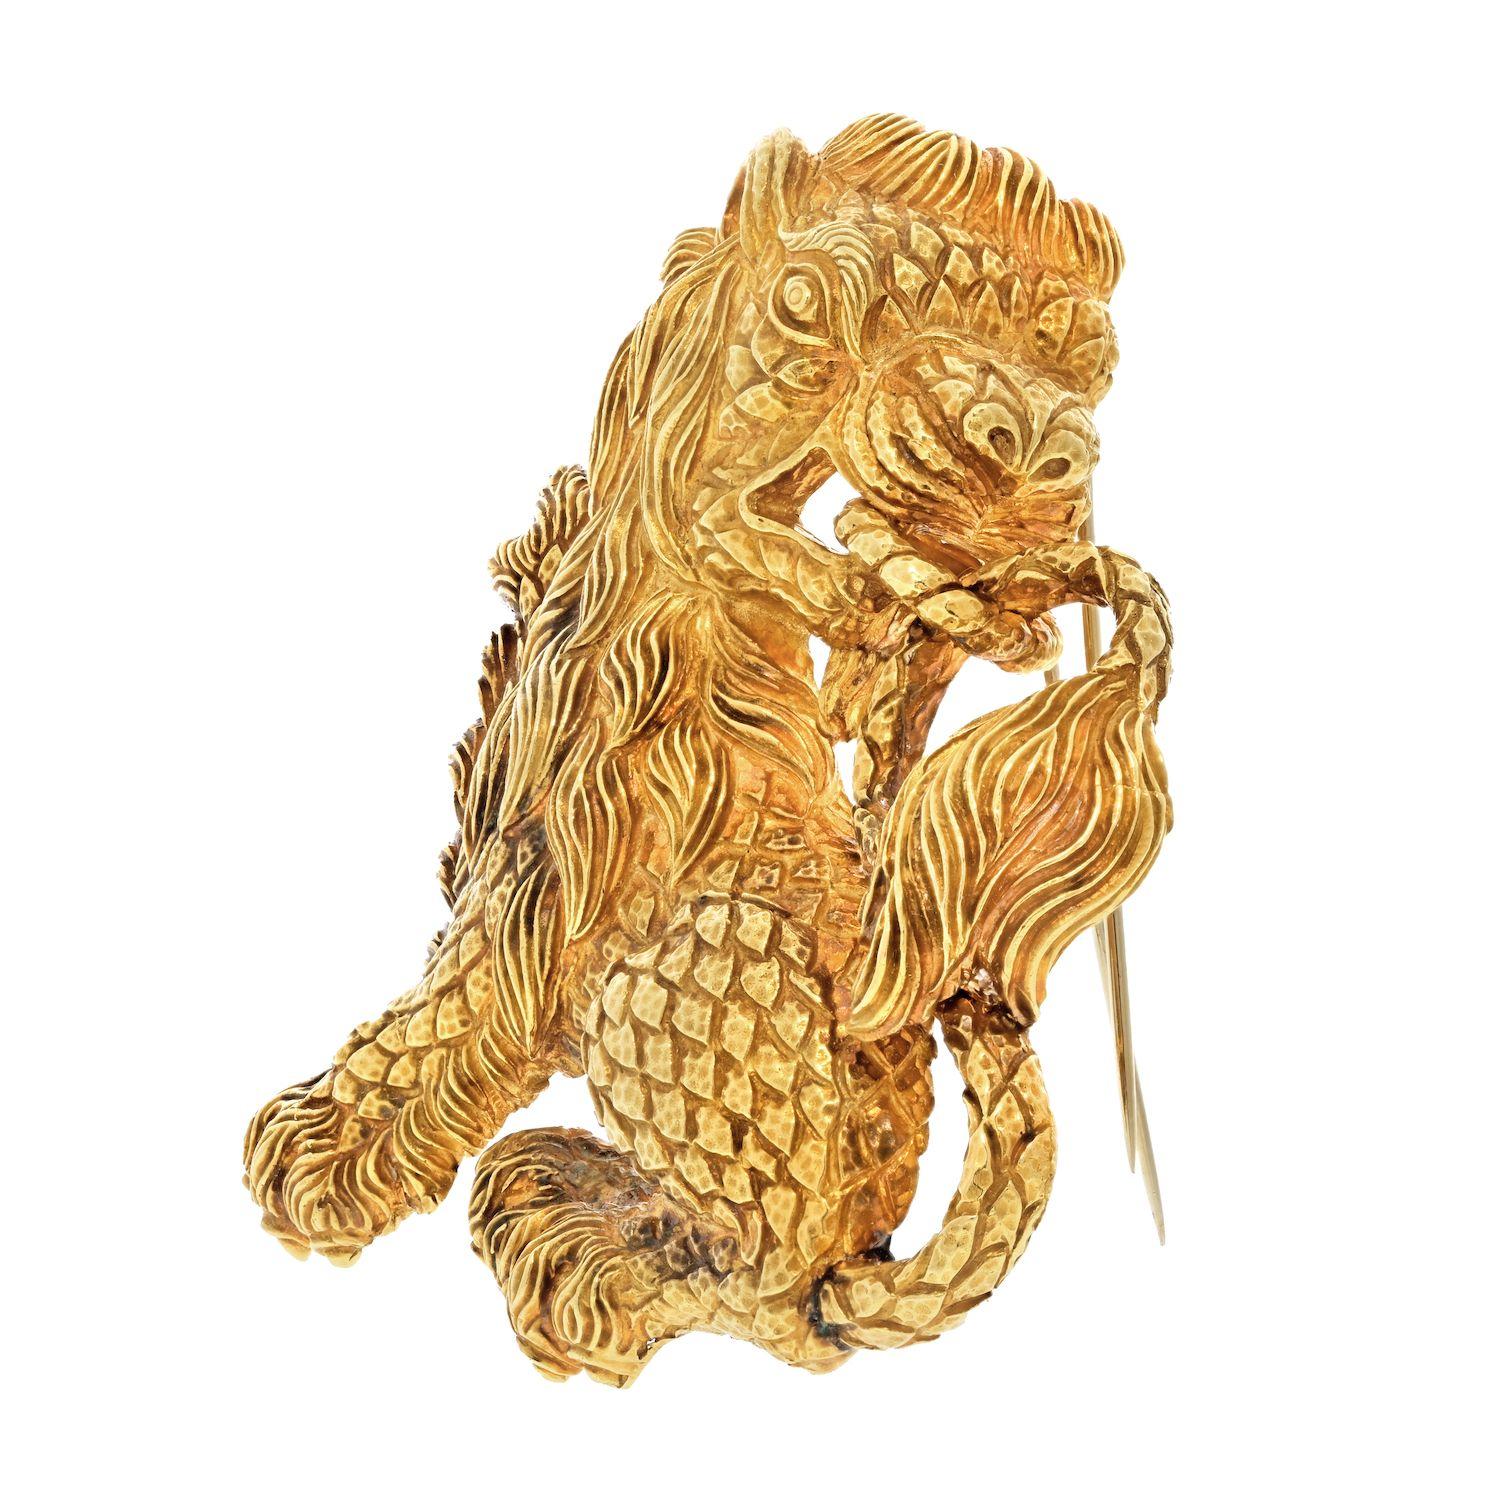 Entfesseln Sie Ihre innere Königin mit der prächtigen David Webb Lion 18K Yellow Gold Brooch. Dieses ehrfurchtgebietende Stück ist ein Symbol für Stärke und Macht, das mit äußerster Präzision und Finesse gefertigt wurde. Wenn Sie sich mit dieser